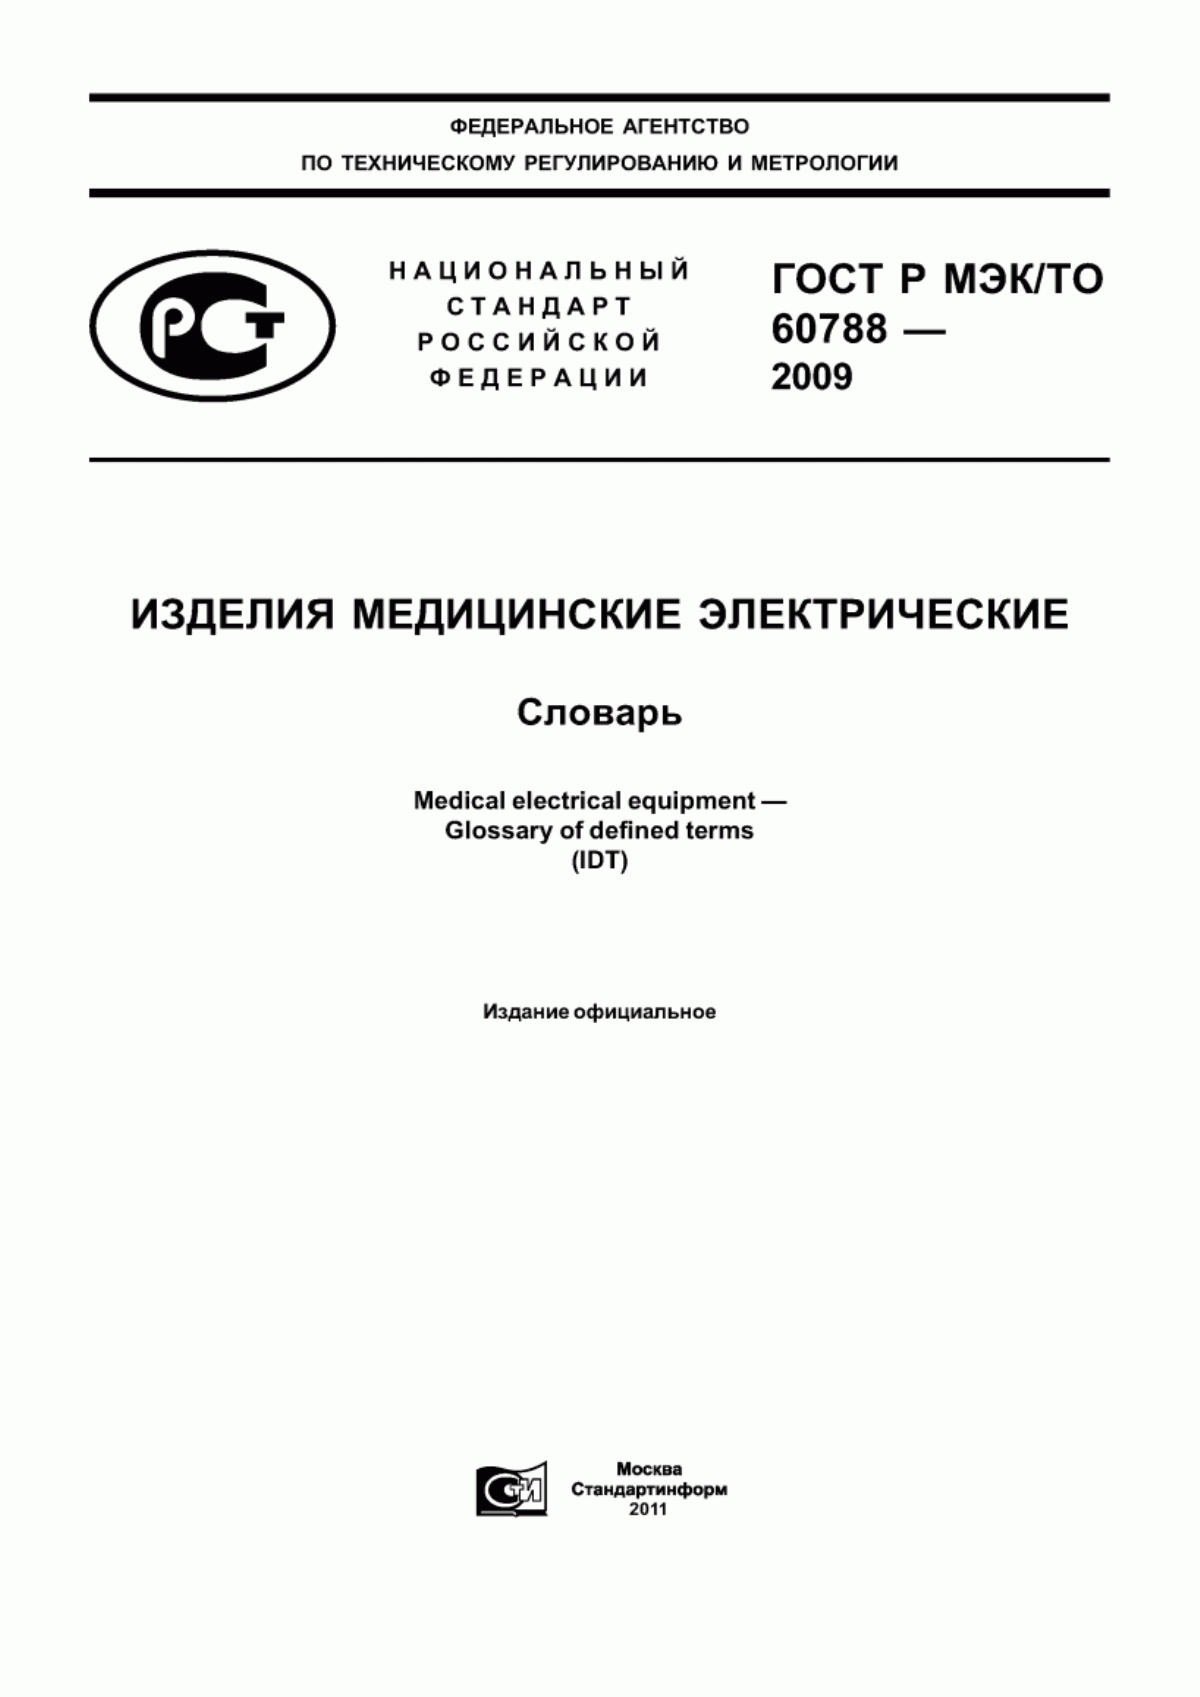 ГОСТ Р МЭК/ТО 60788-2009 Изделия медицинские электрические. Словарь